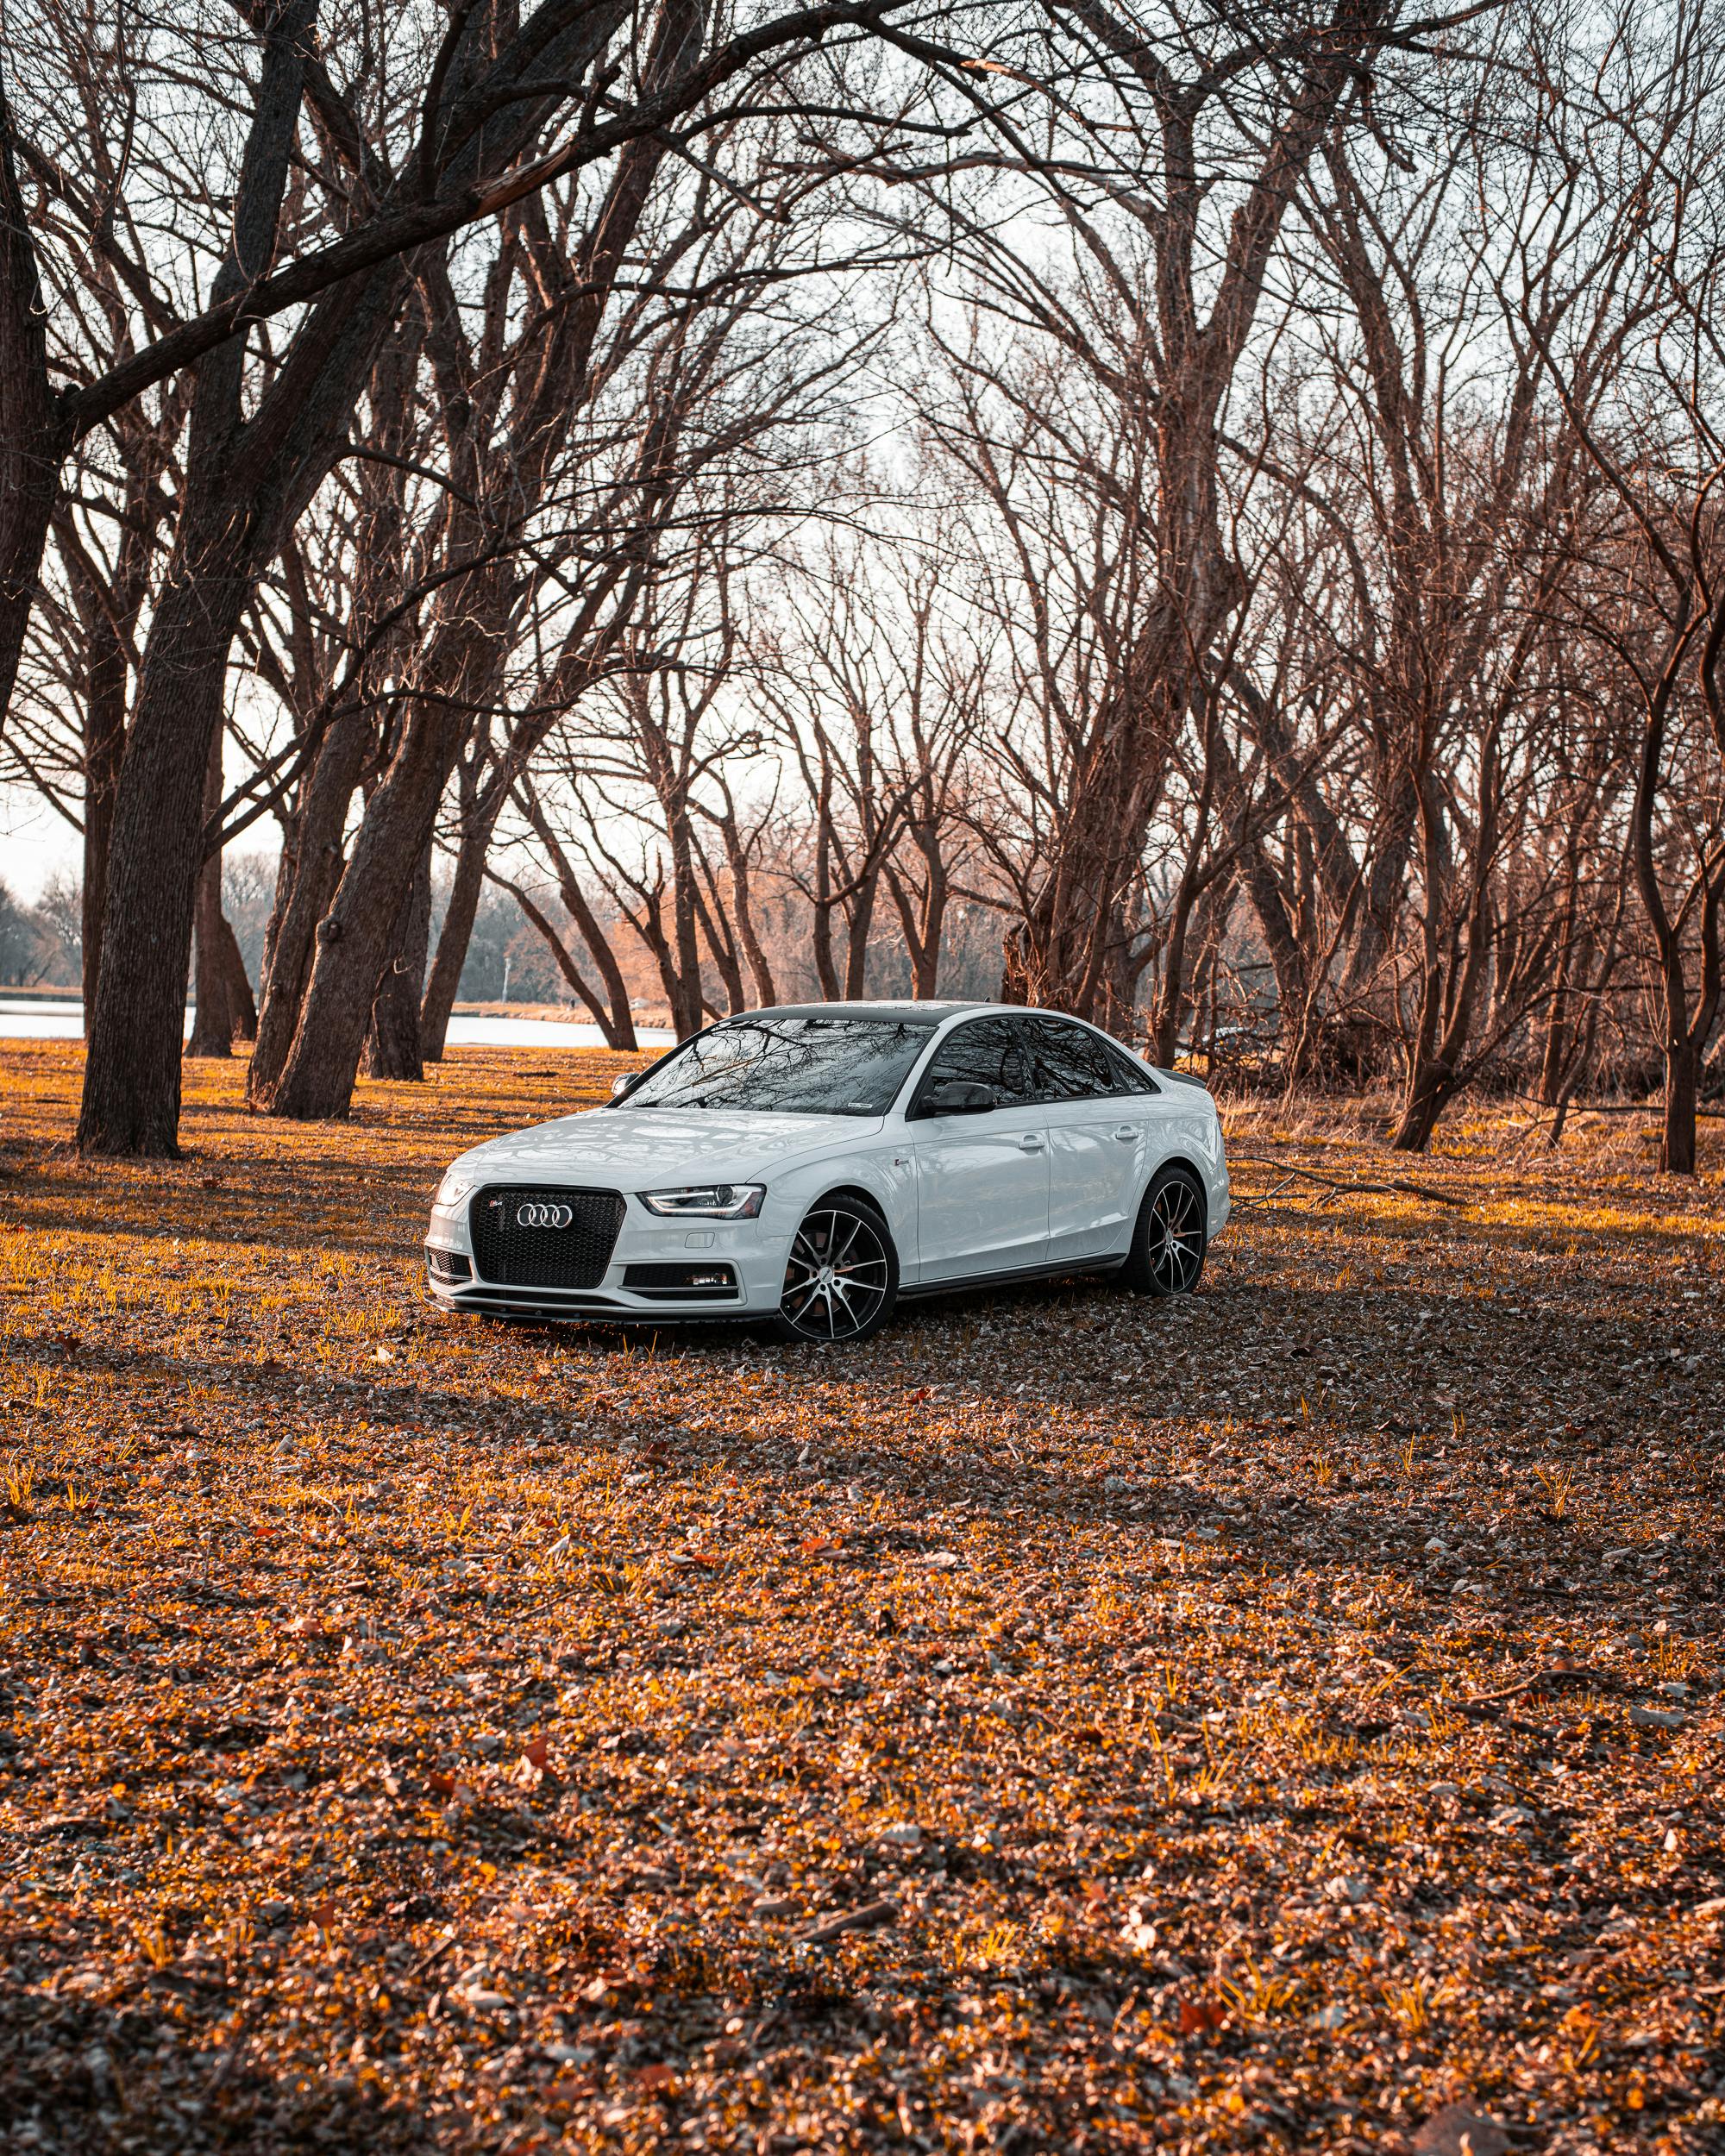 Audi là một trong những nhà sản xuất hàng đầu trong ngành công nghiệp ô tô toàn cầu. Hình nền xe Audi sẽ cung cấp cho bạn một cái nhìn chi tiết vào thiết kế tinh tế, khả năng vận hành đáng kinh ngạc và phong cách thể thao đầy chất lượng mà Audi mang lại.